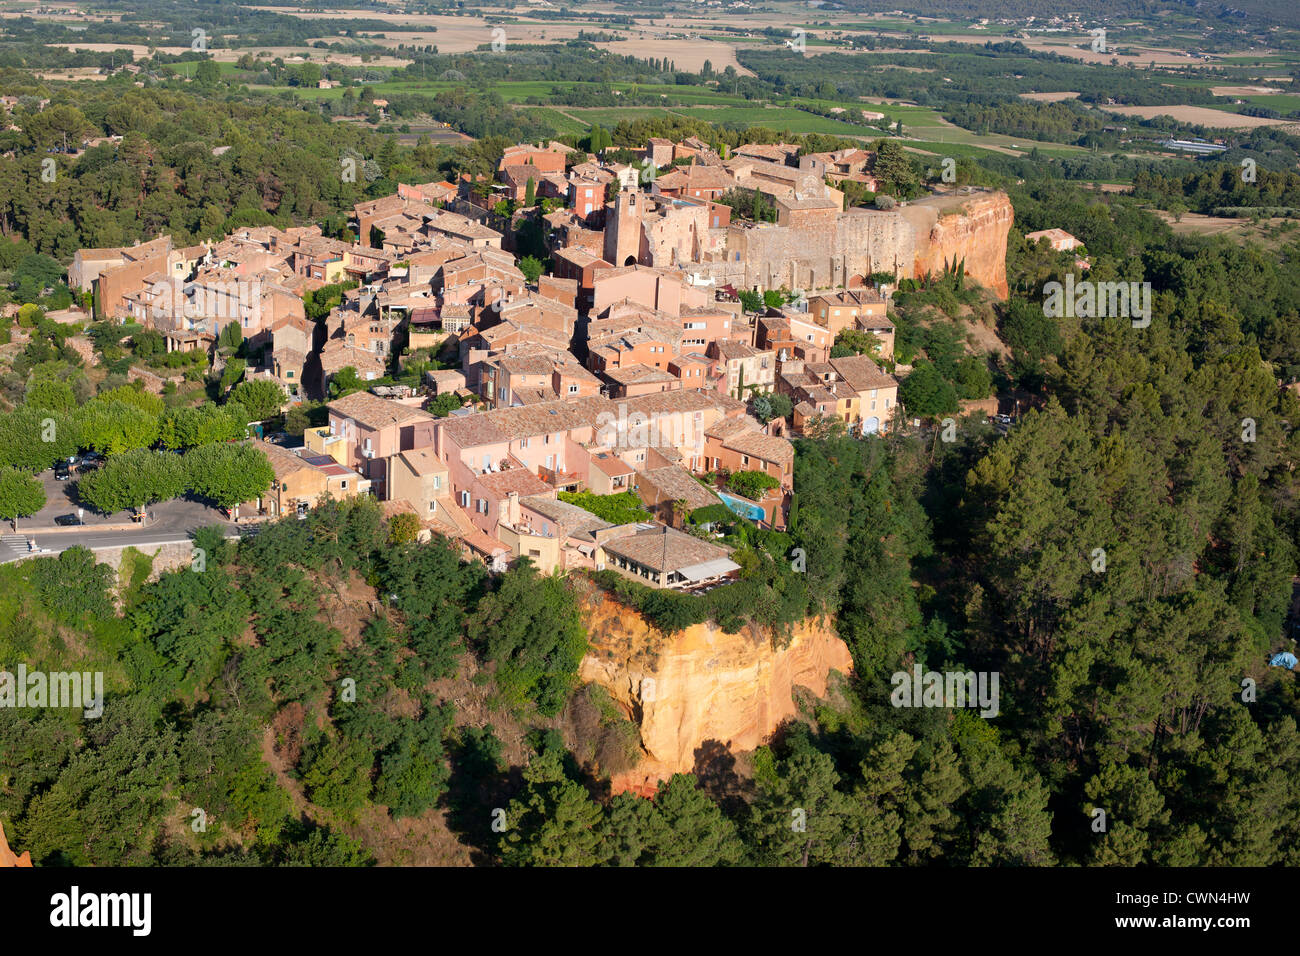 LUFTAUFNAHME. Mittelalterliches Dorf auf einer rot-ockerfarbenen Lehmklippe. Roussillon, Vaucluse, Provence, Frankreich. Stockfoto